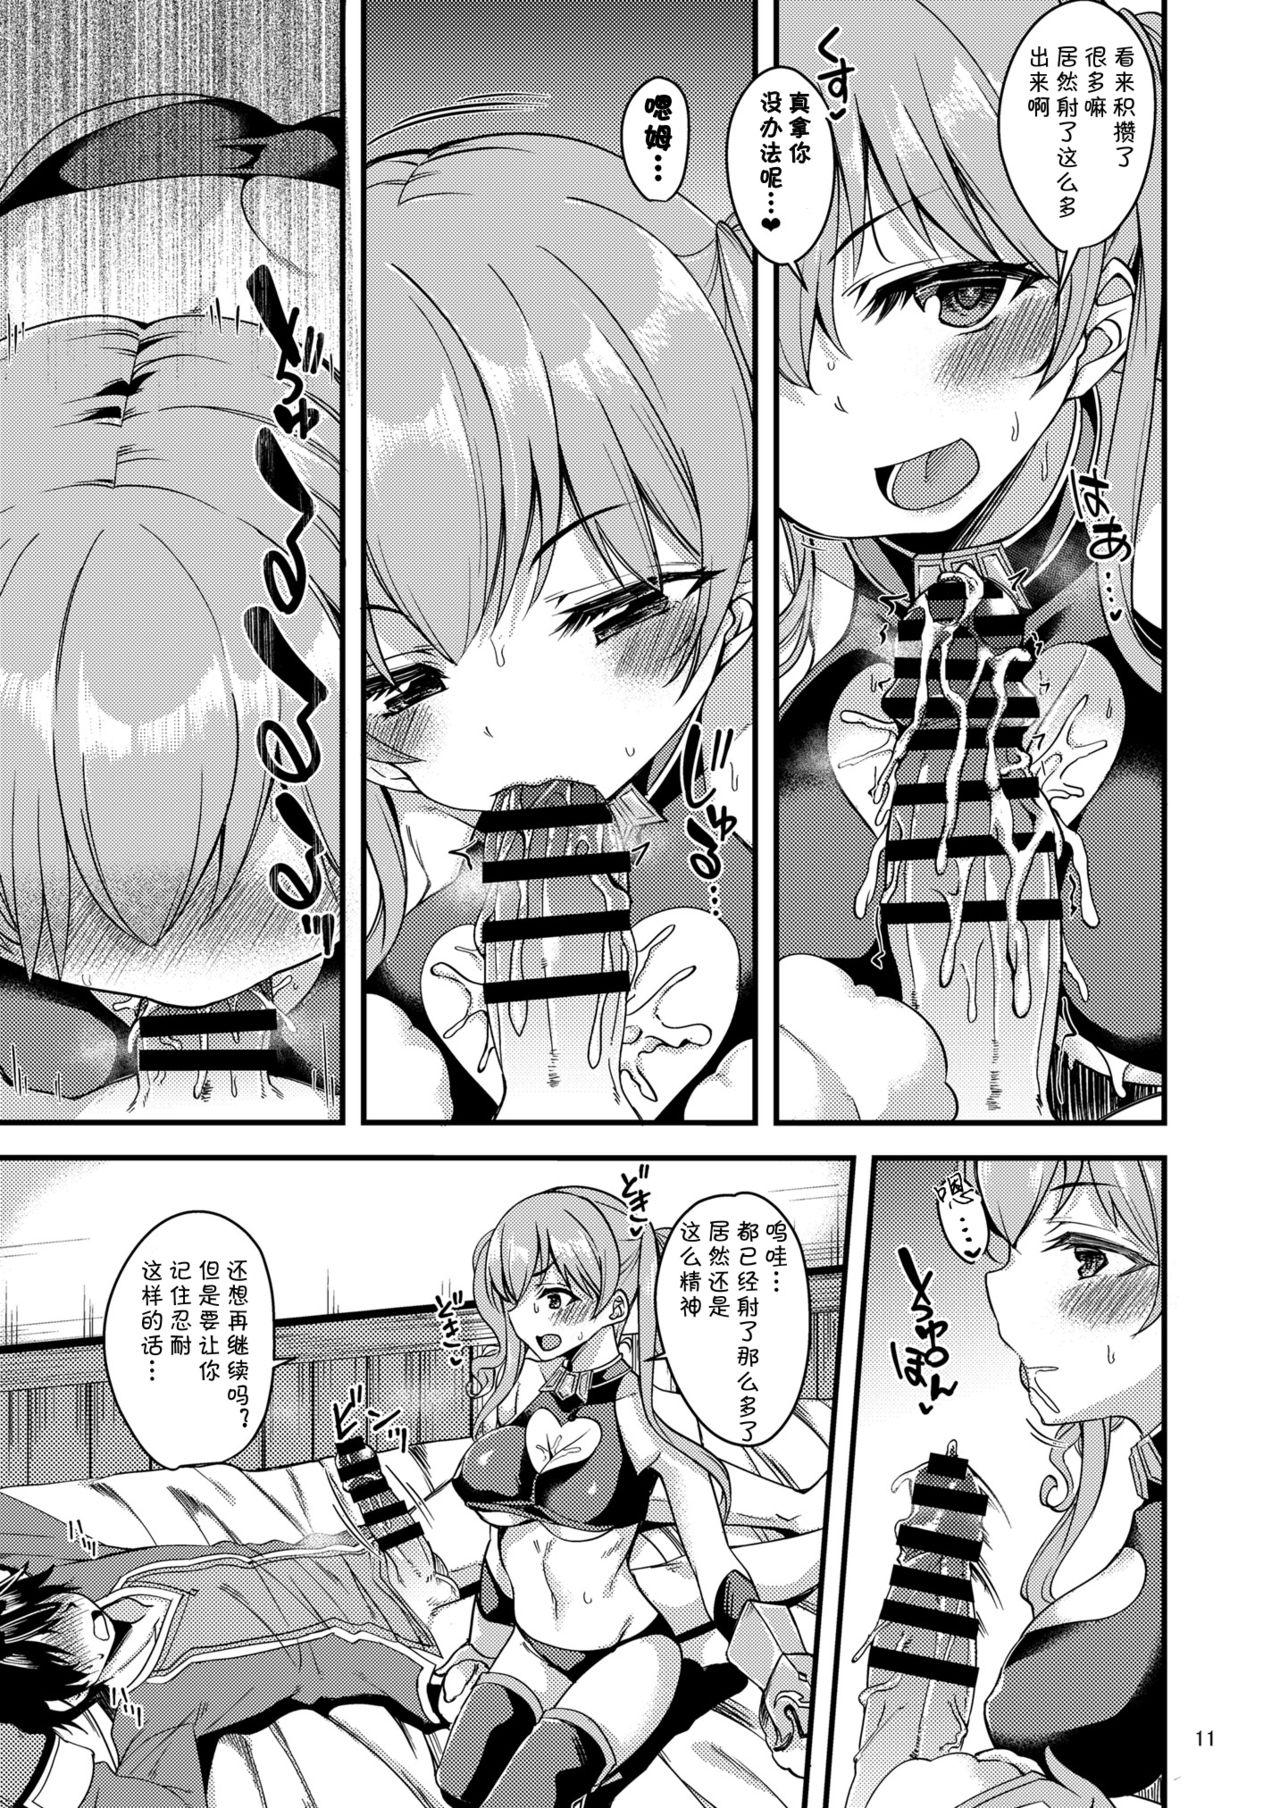 Dirty Tsumugi Make Heroine Move!! 04 - Princess connect Tiny - Page 12